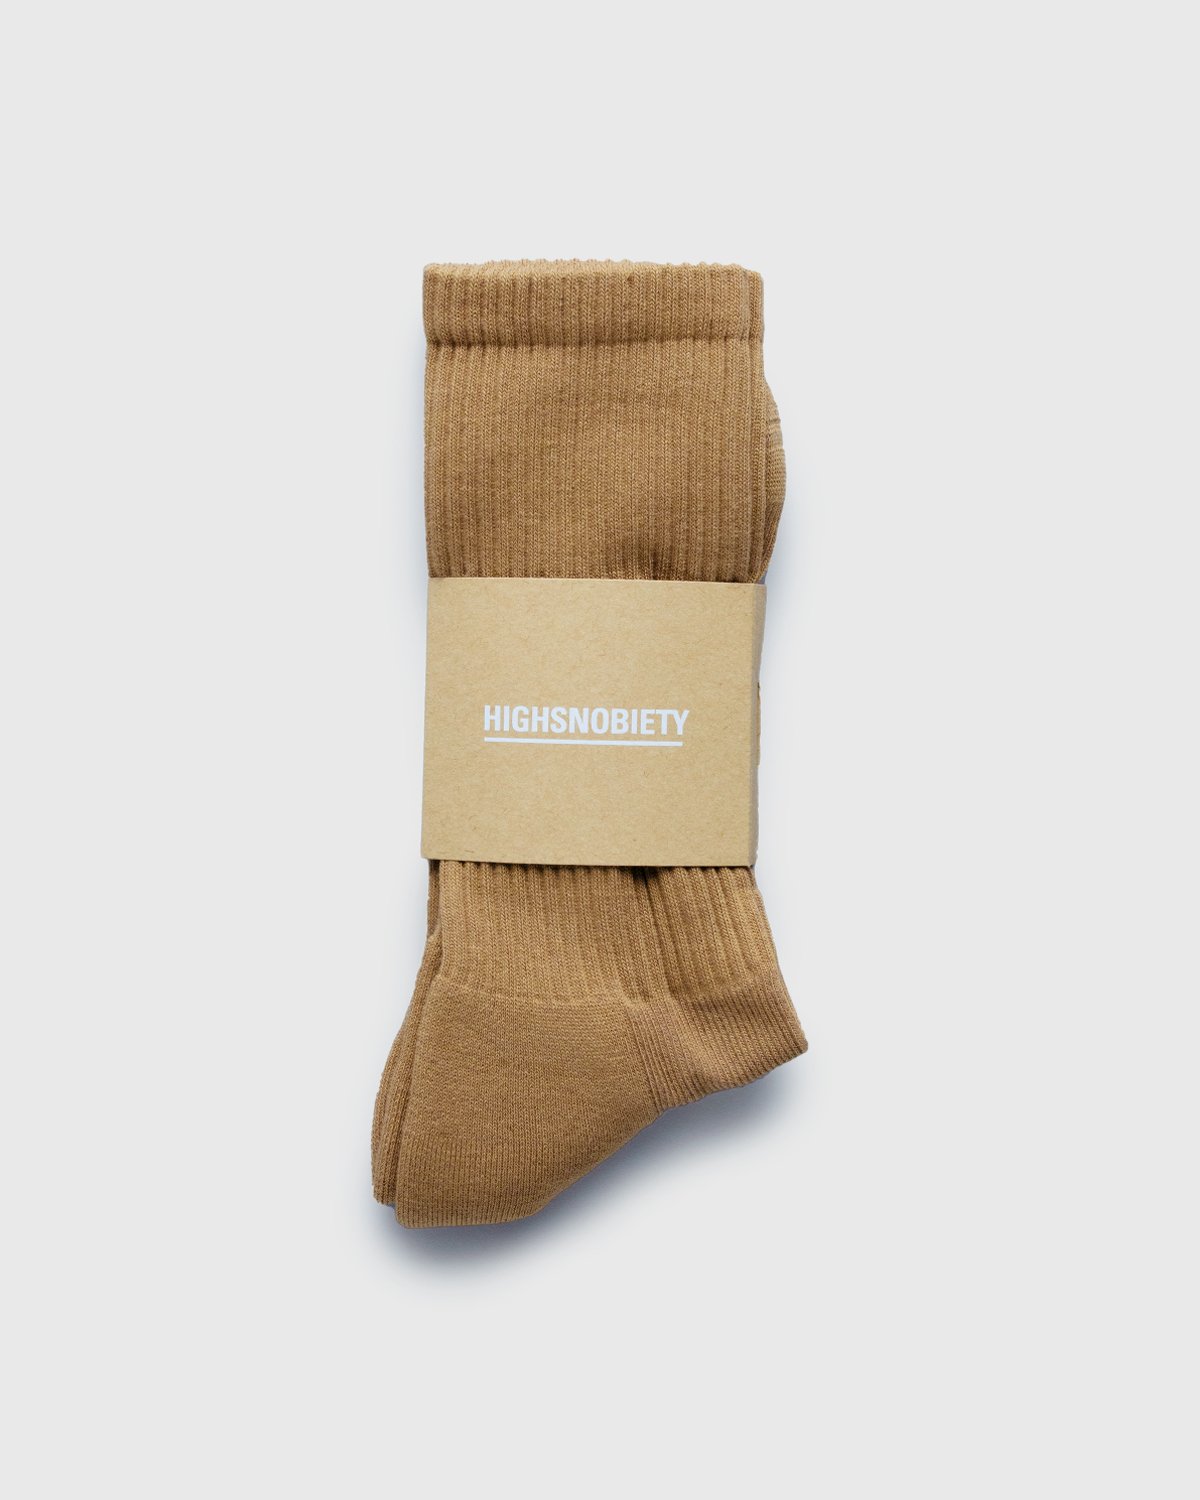 Highsnobiety - Socks Cork - Accessories - Beige - Image 2